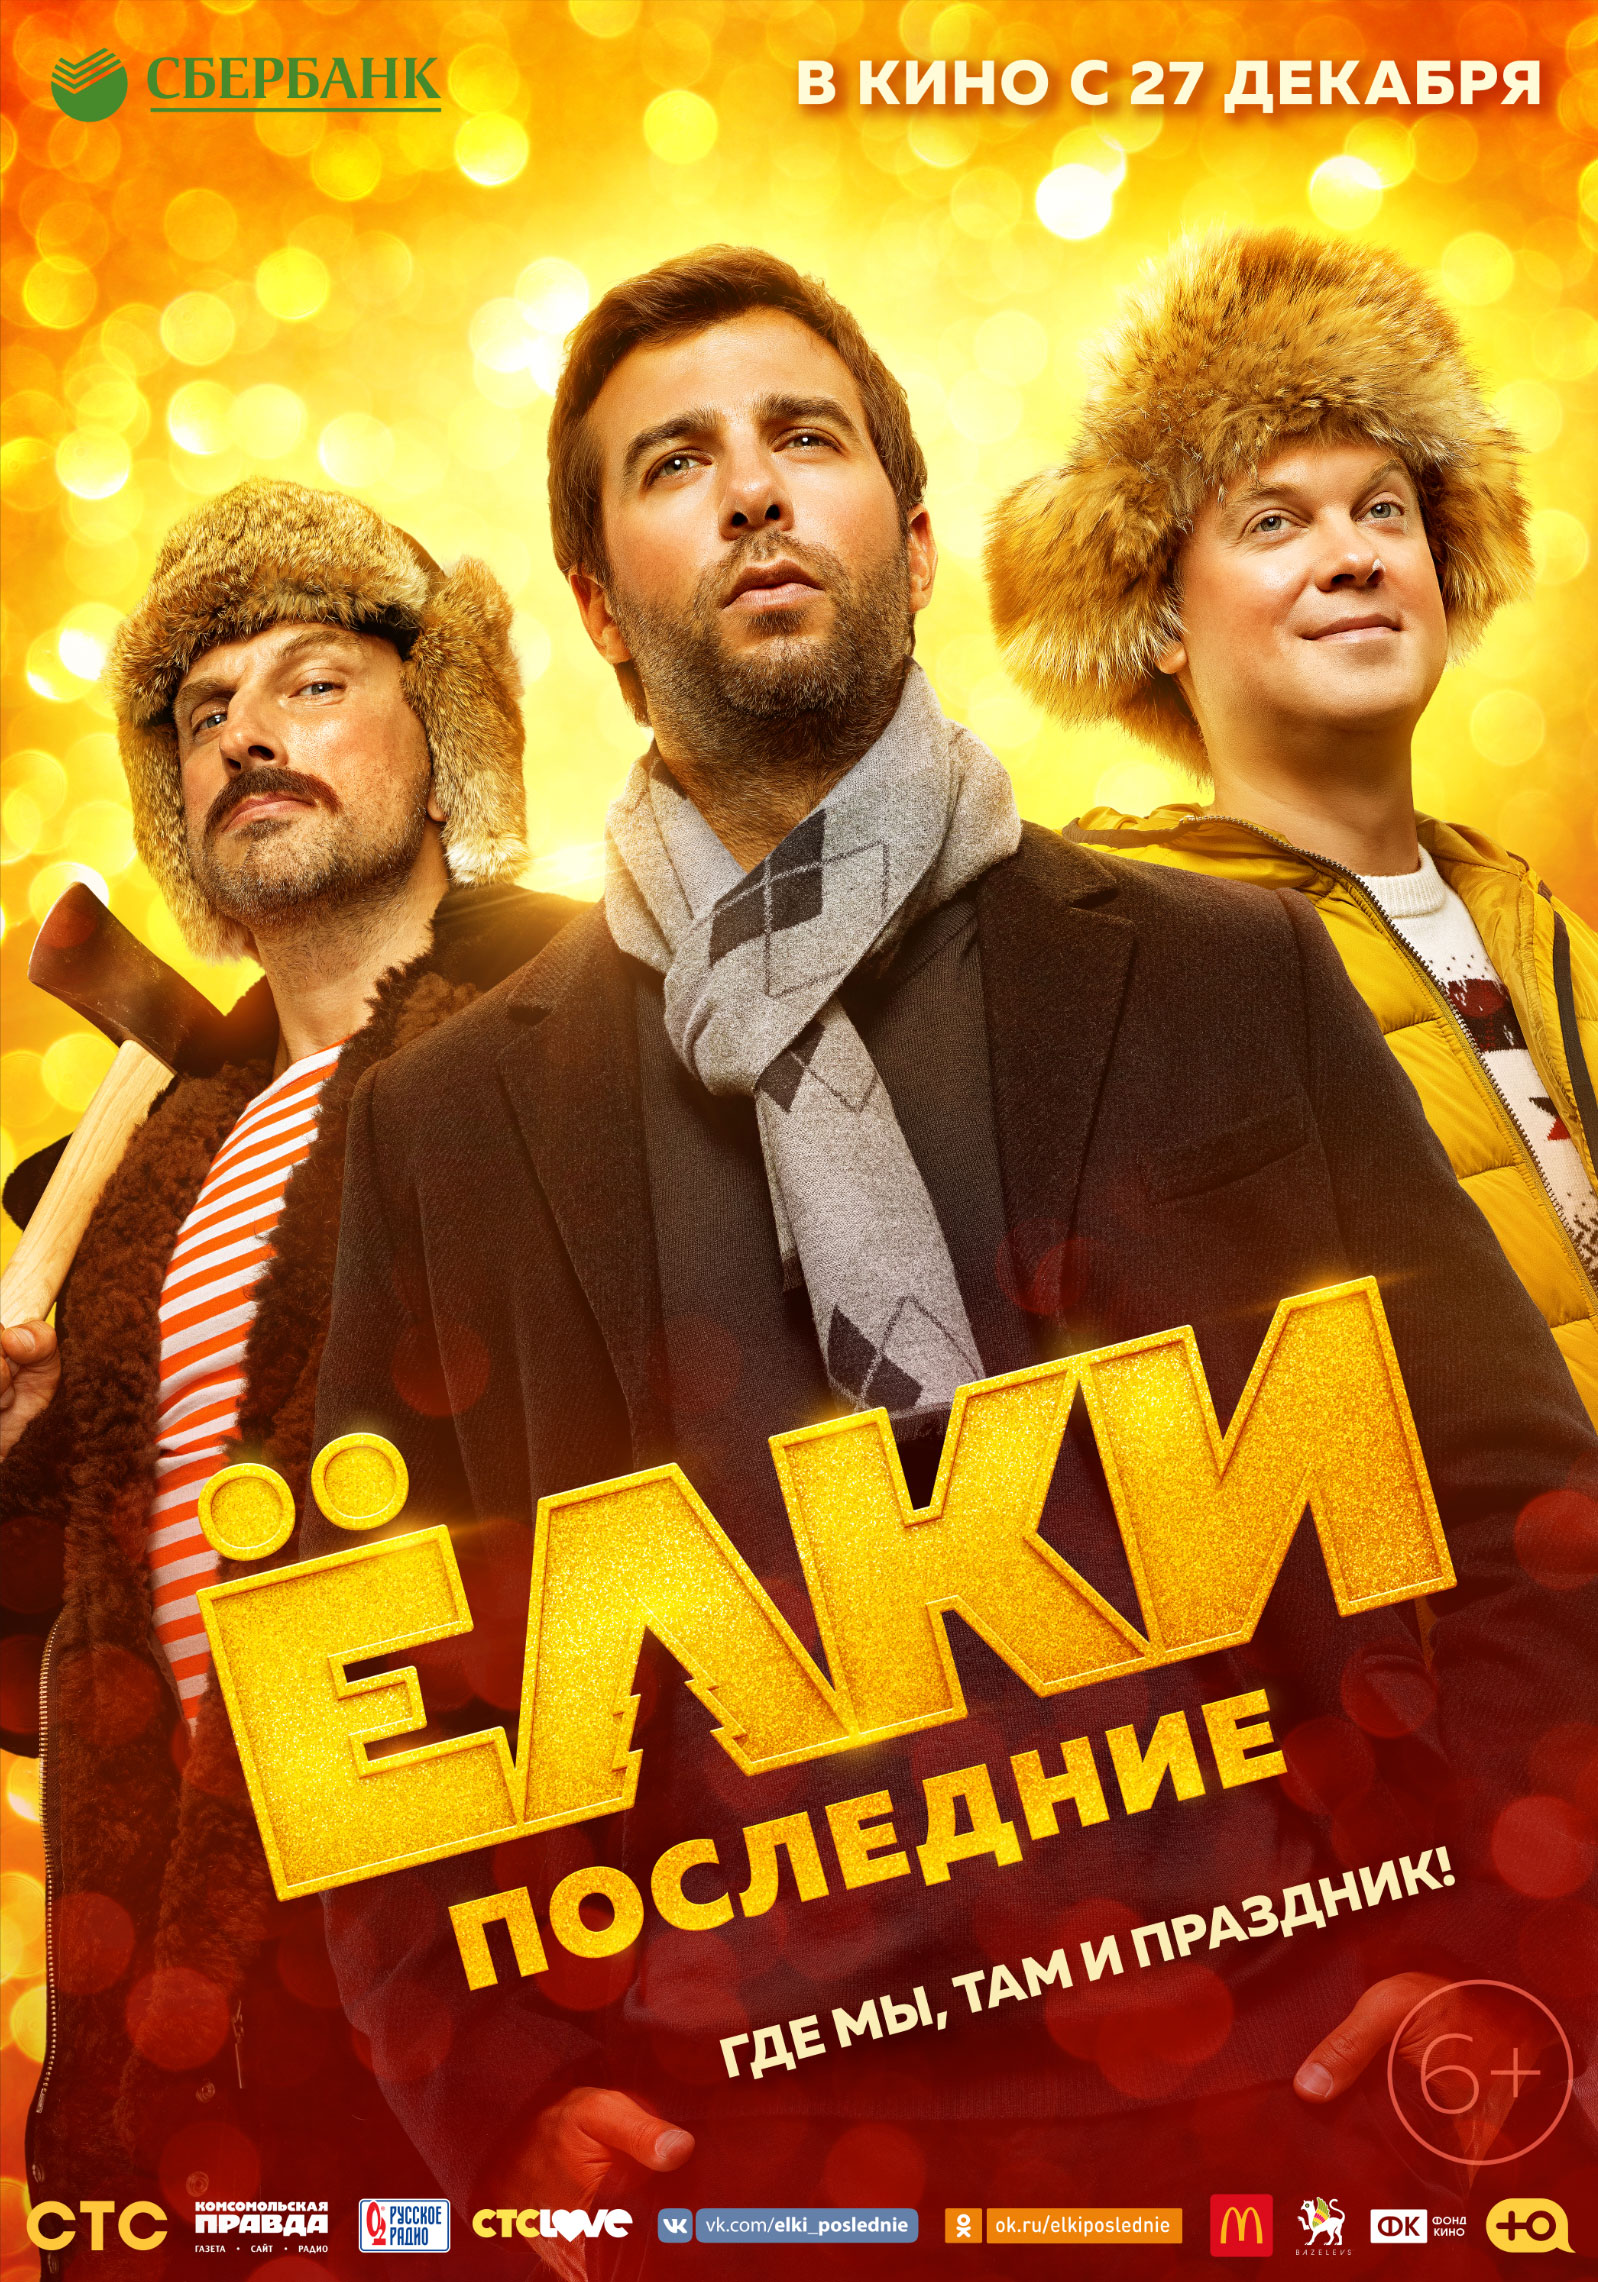 https://media.kg-portal.ru/movies/e/elkiposlednie/posters/elkiposlednie_4.jpg